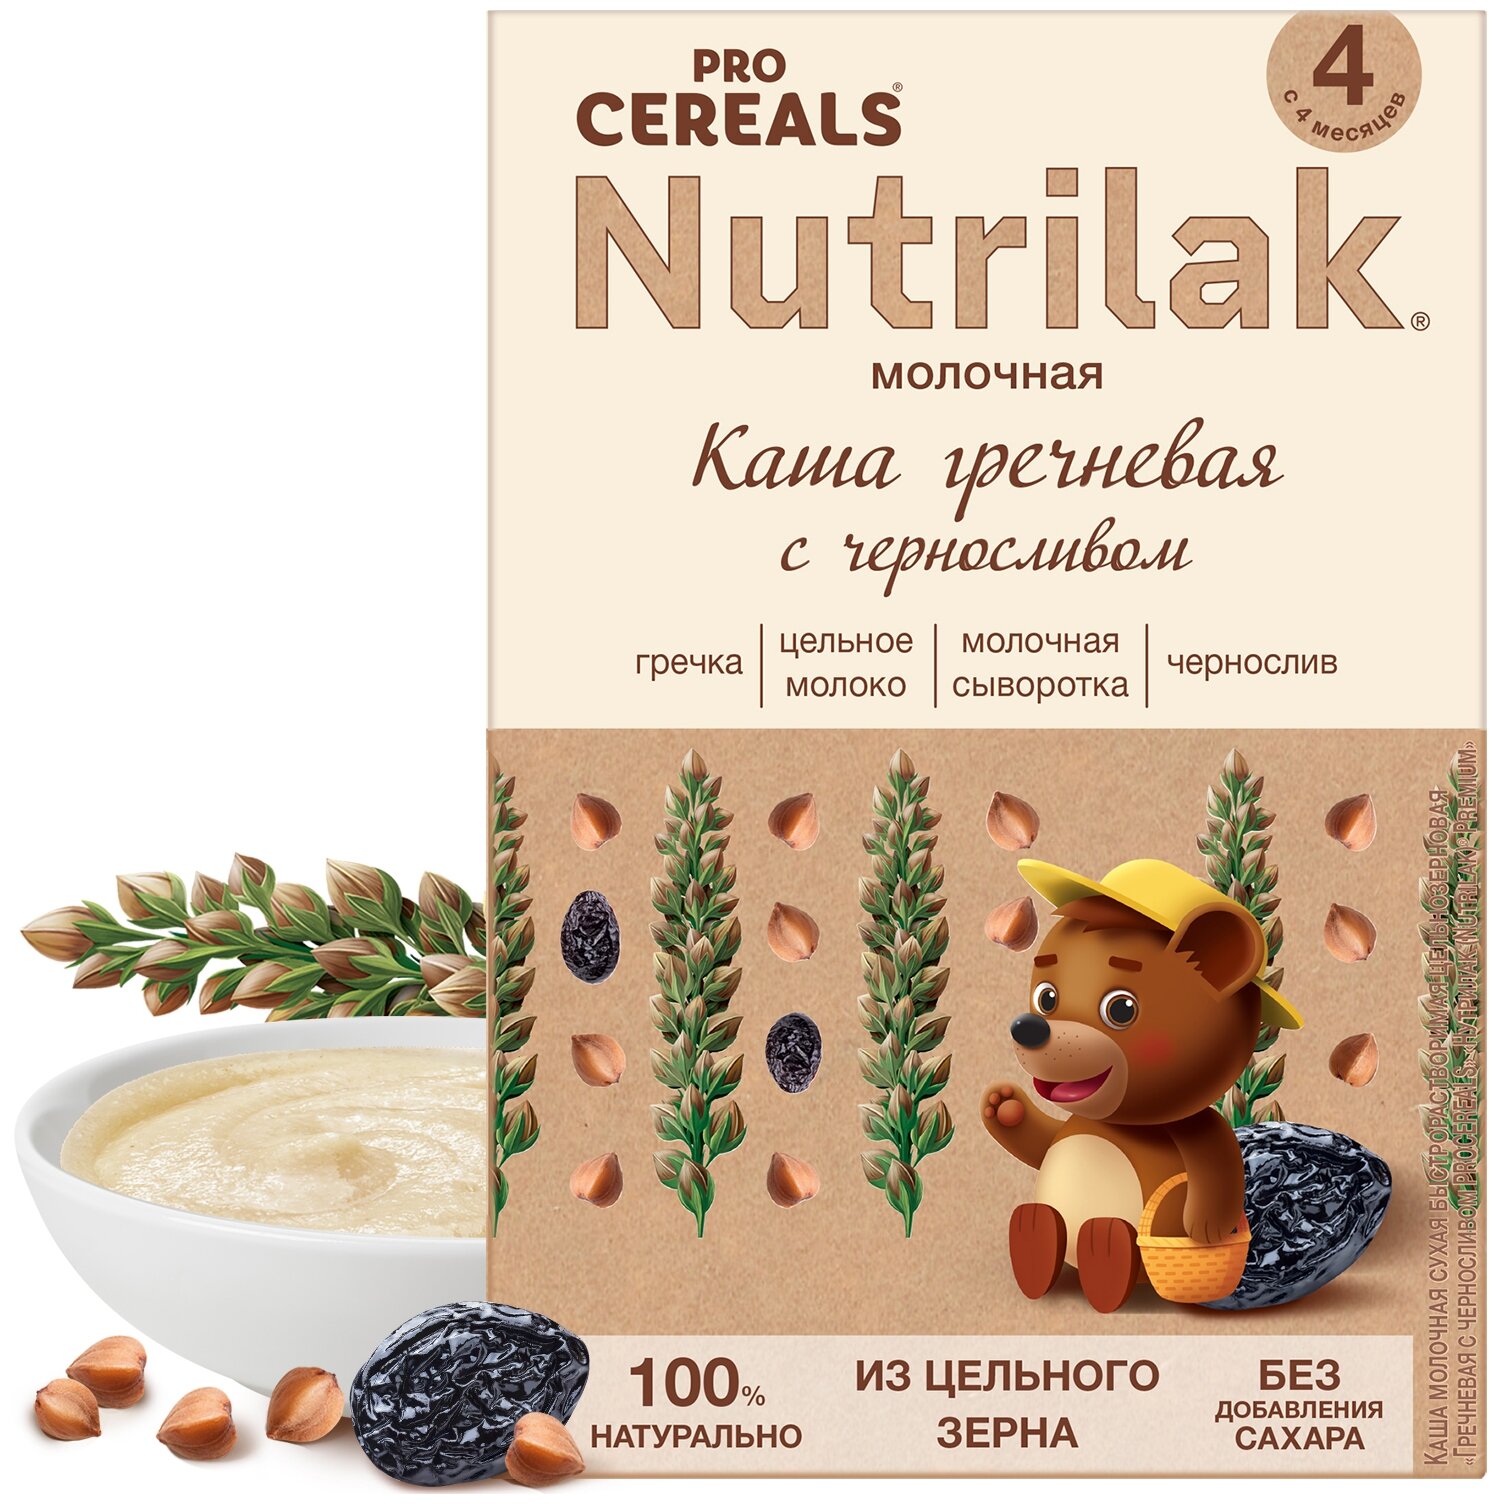 Каша гречневая с черносливом Nutrilak Premium Pro Cereals цельнозерновая молочная, 200гр - фото №1